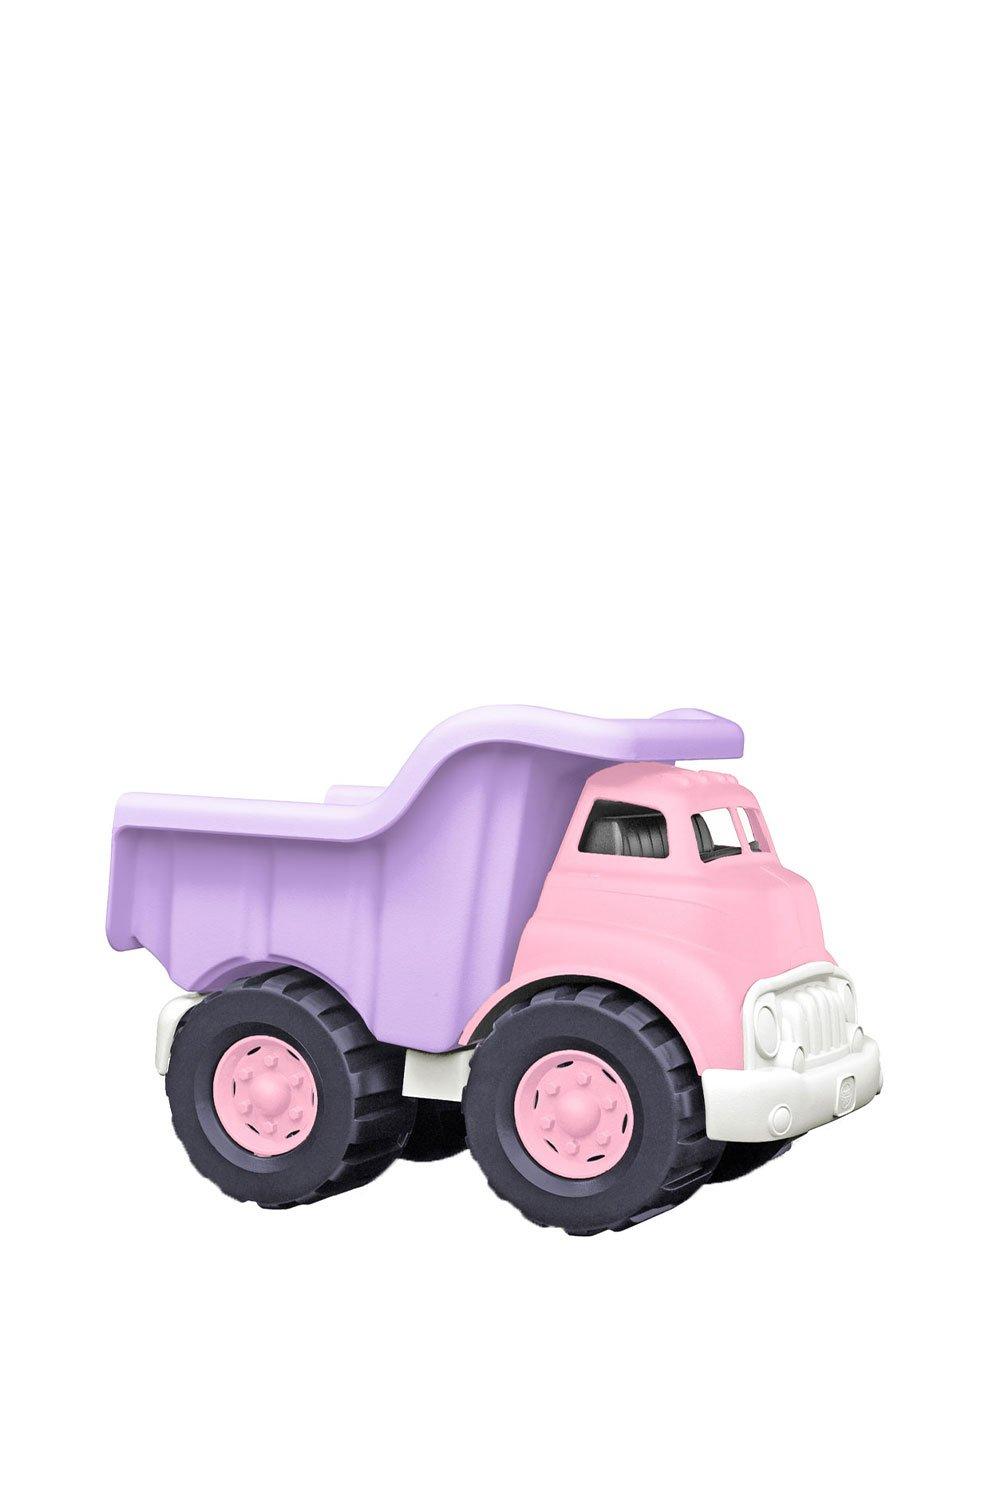 Green Toys Dump Truck|pink